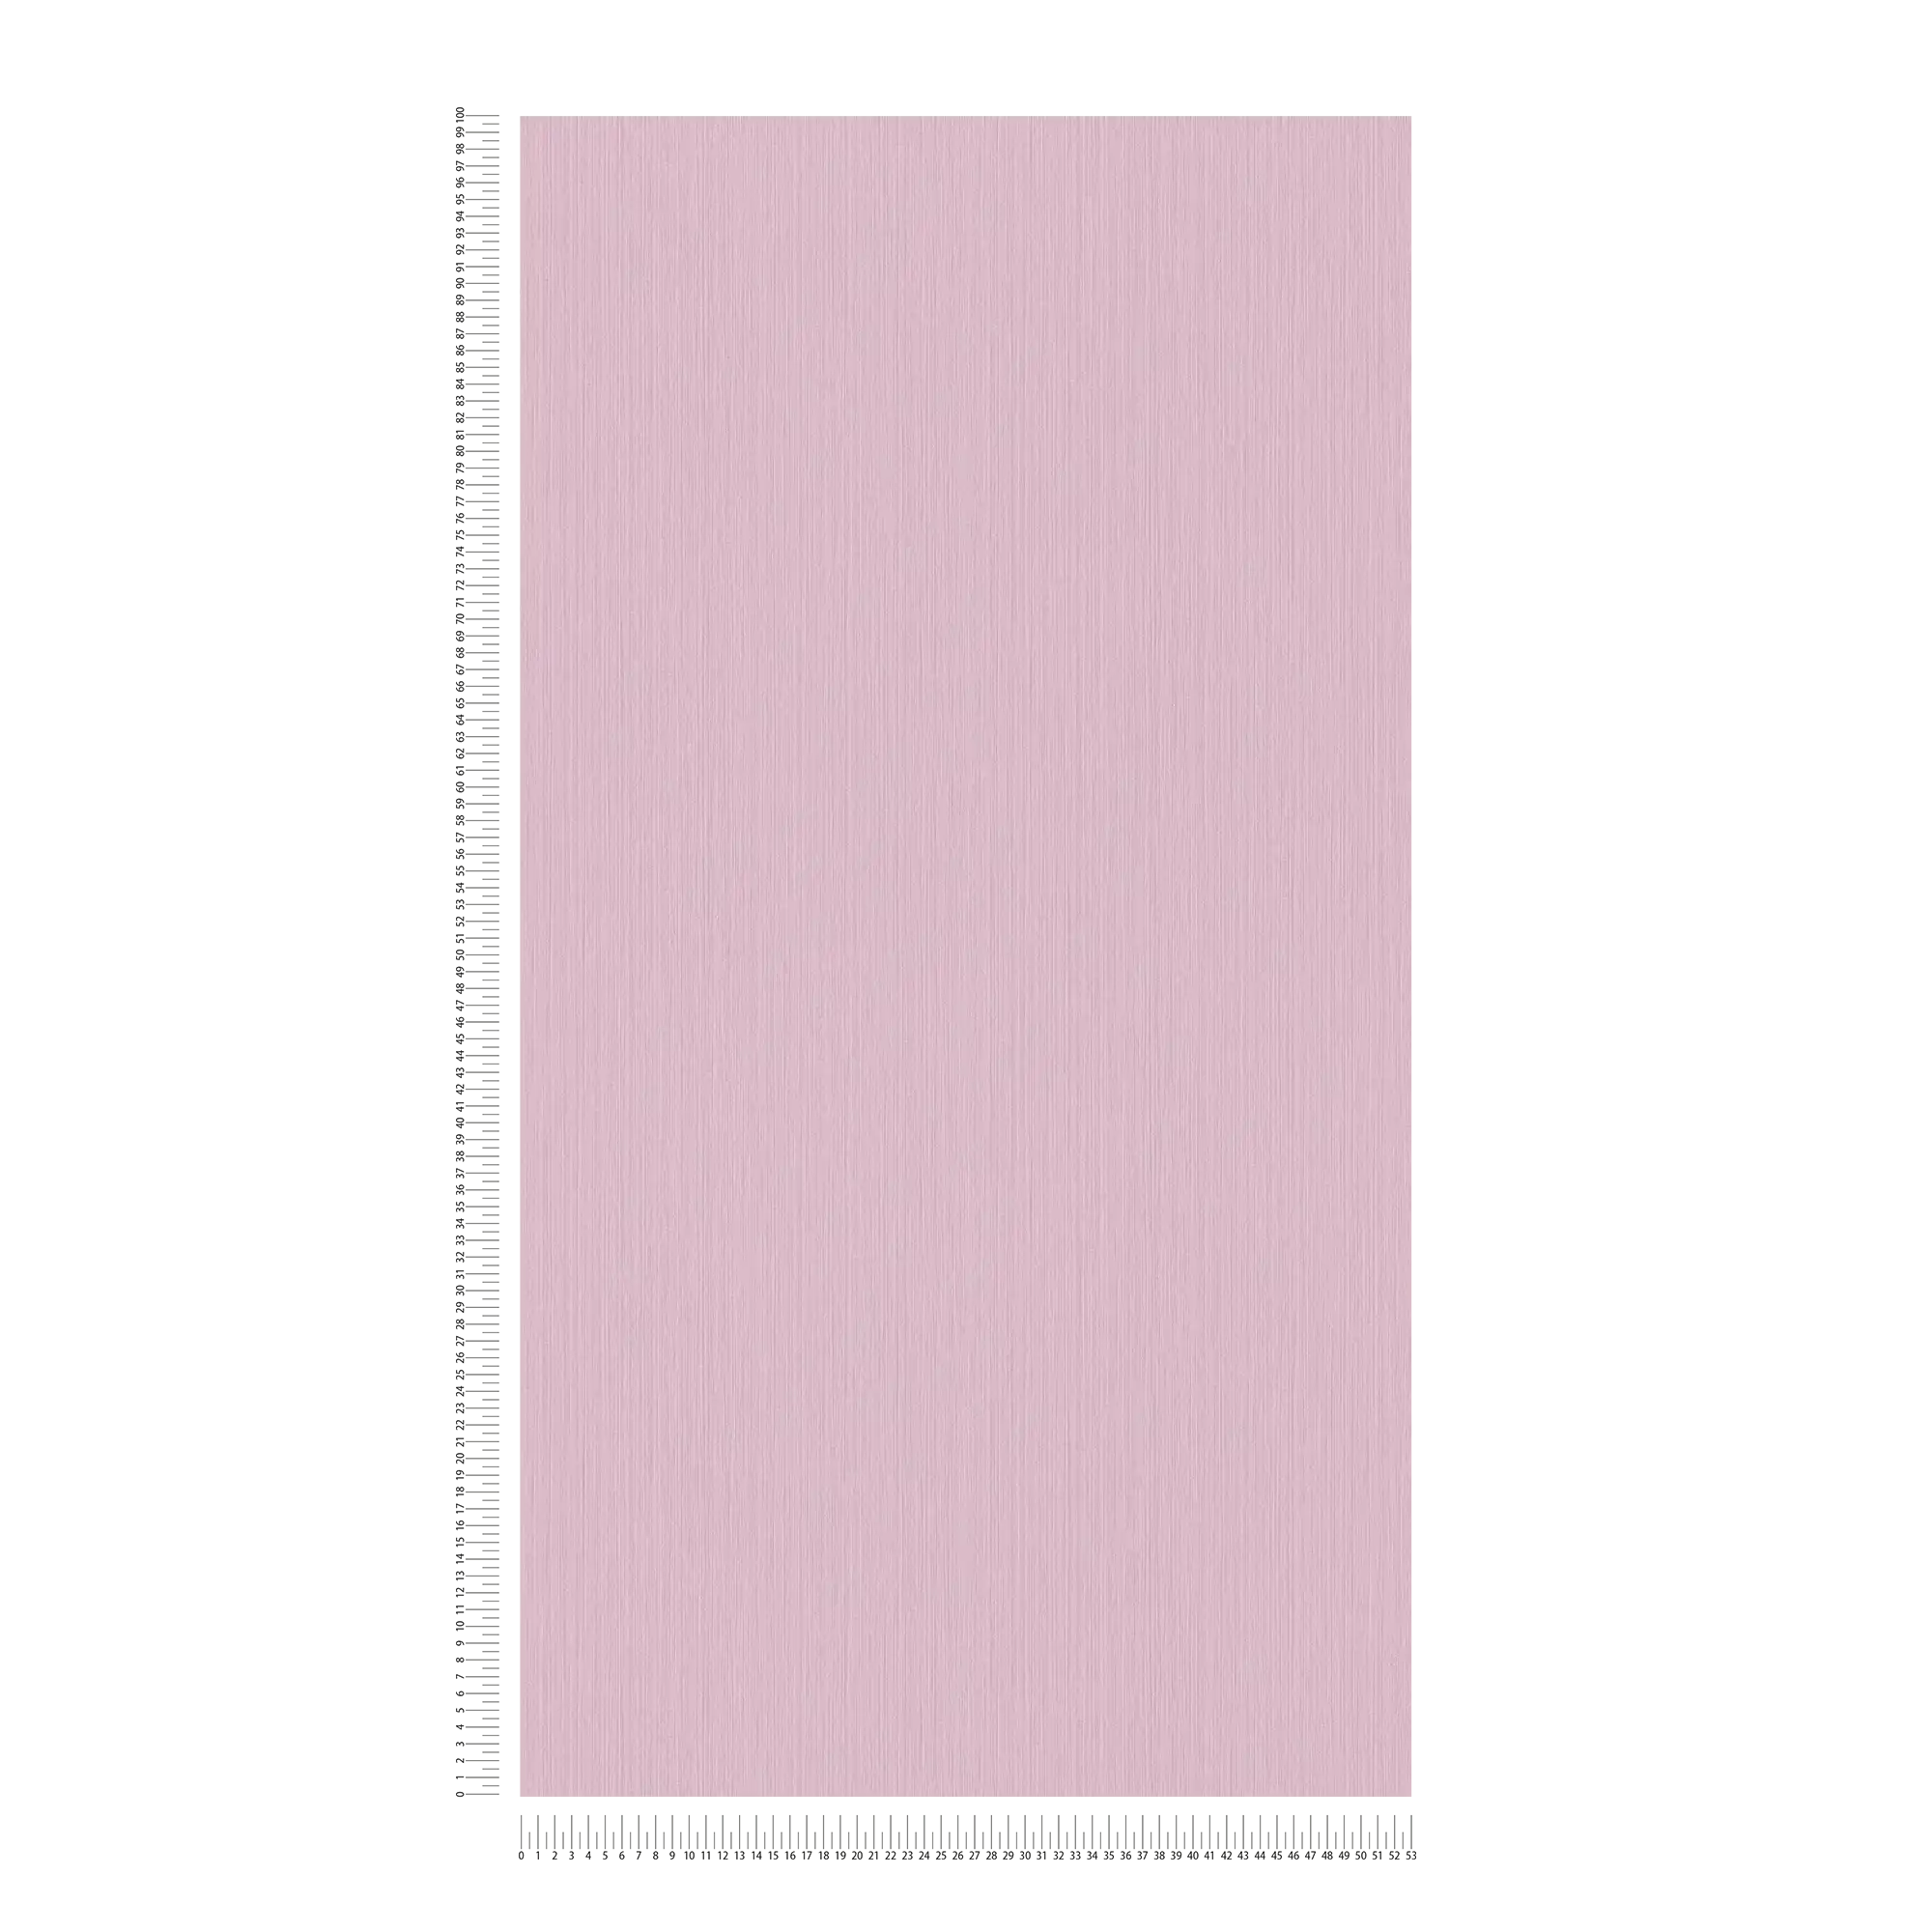             Effen roze behang met gevlekt textieleffect van MICHALSKY
        